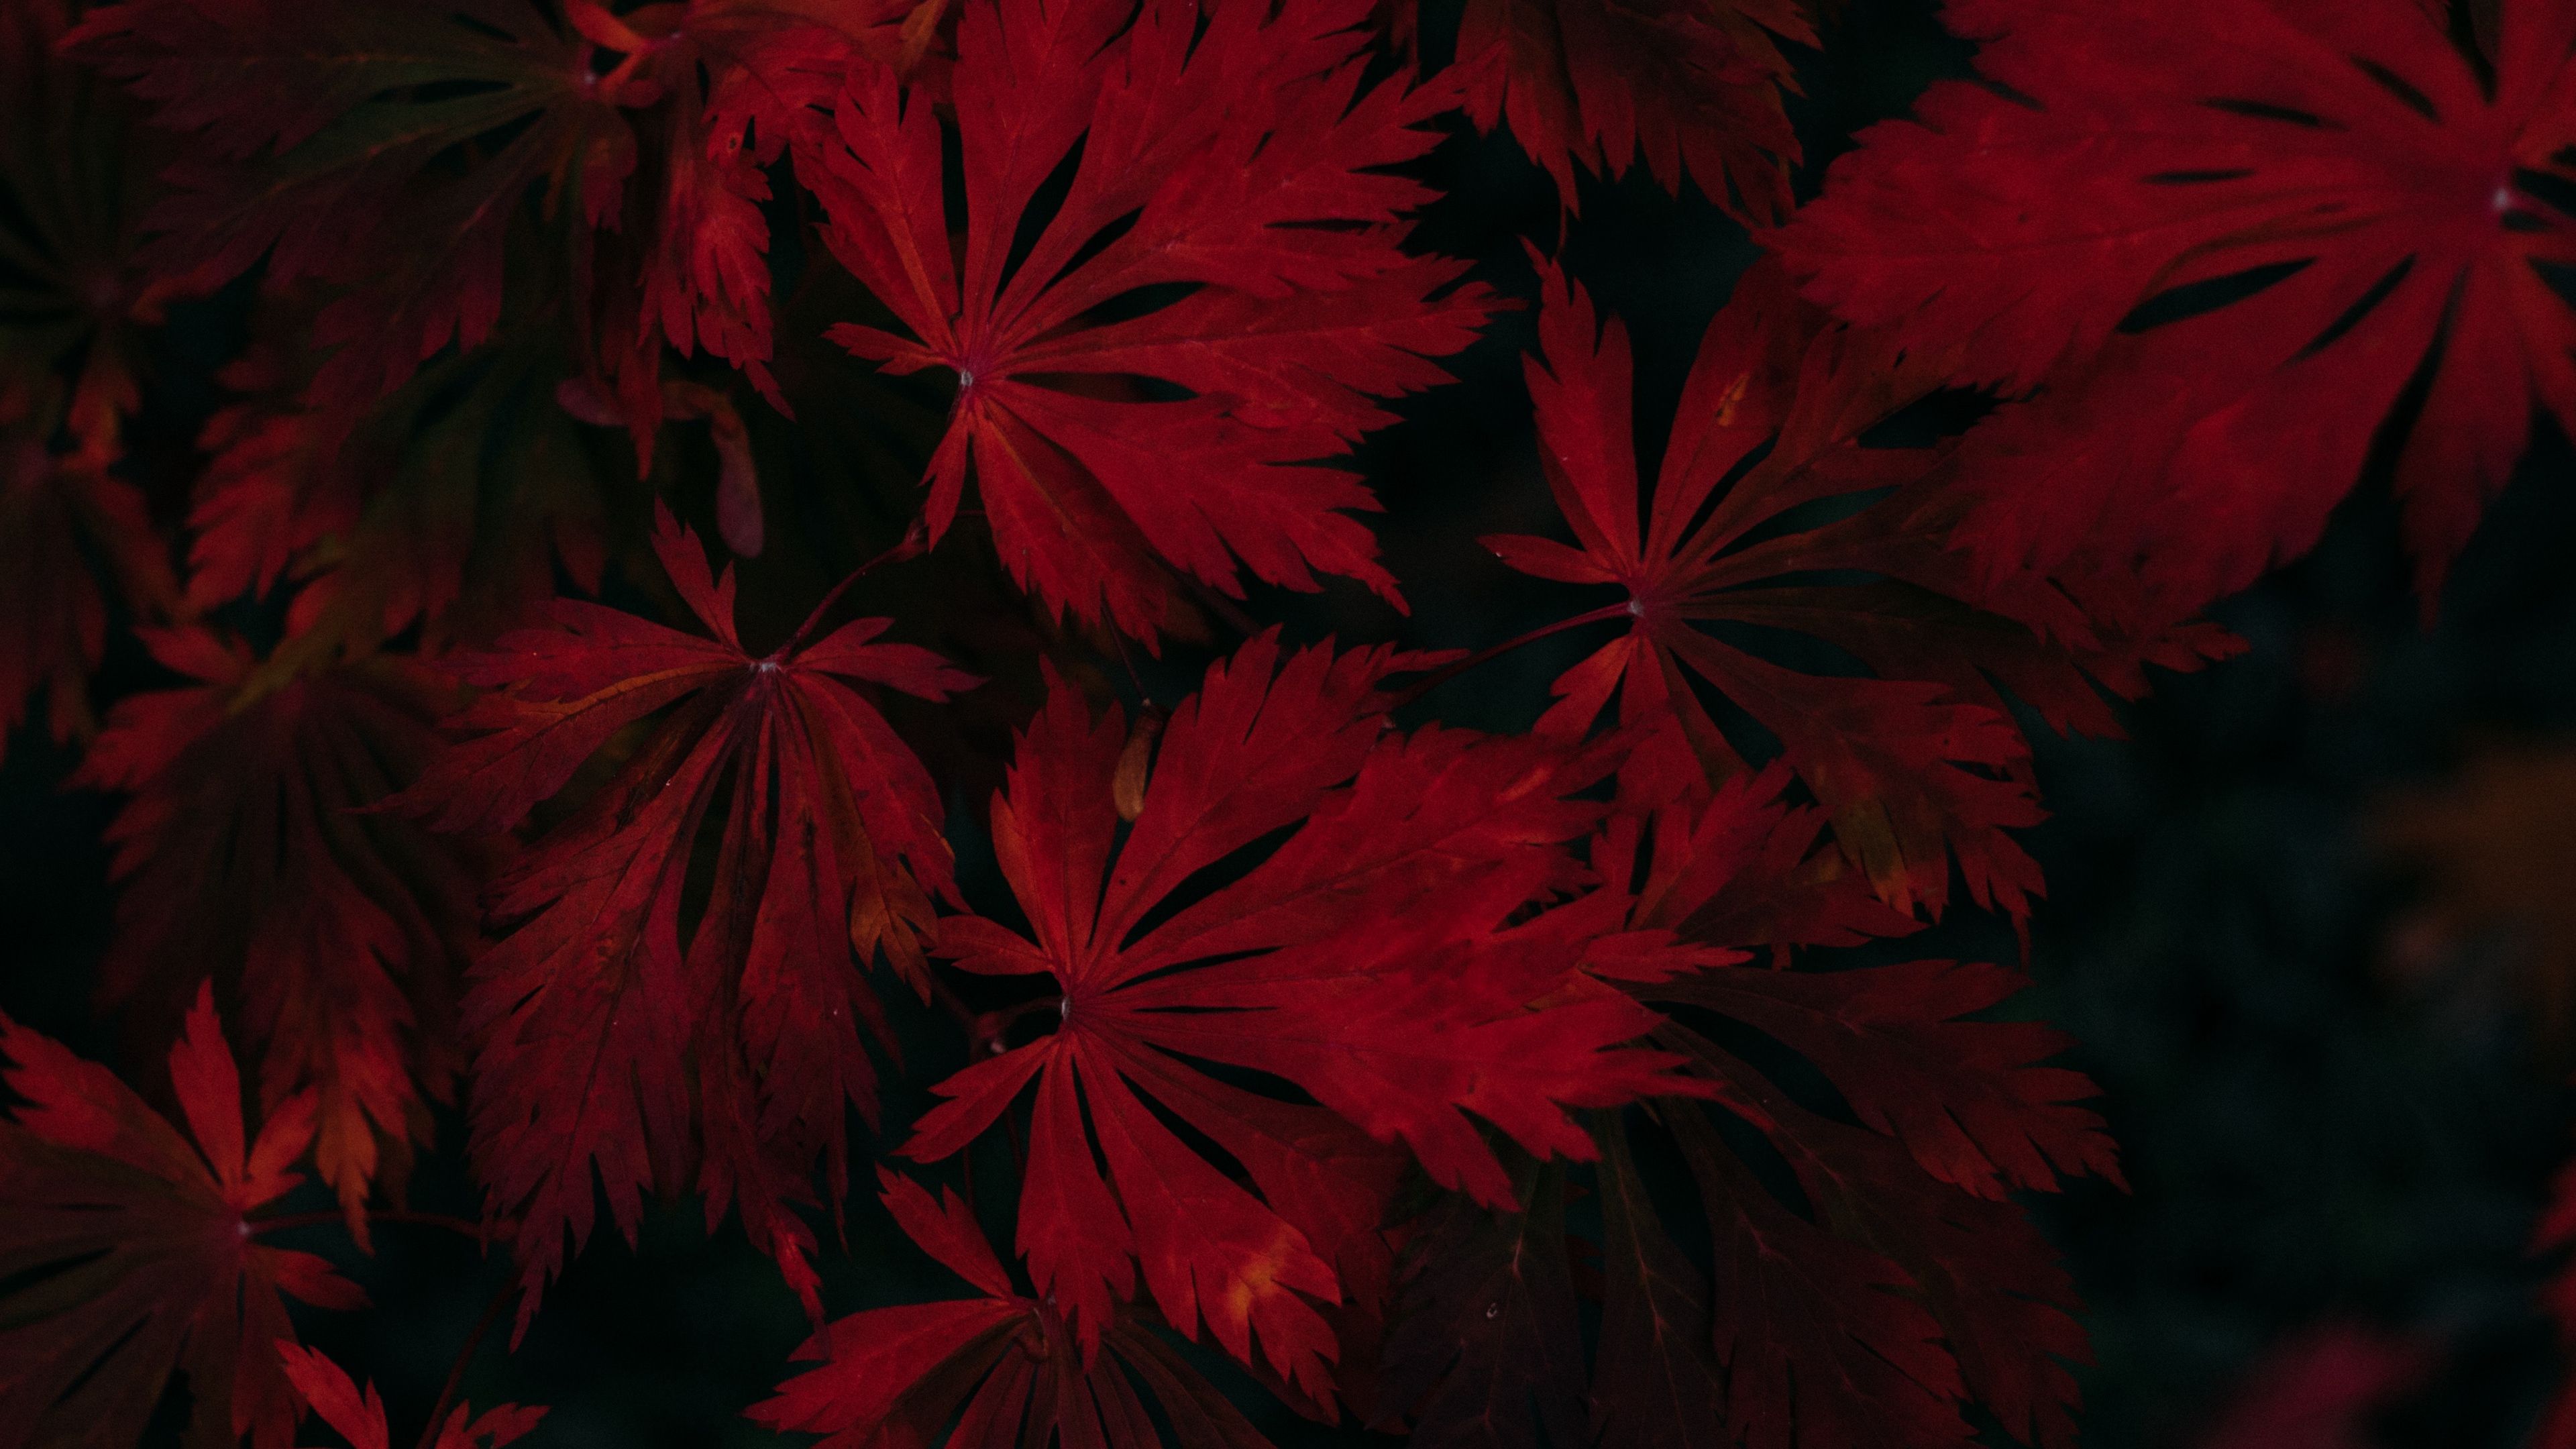 leaves, red, black, dark, plant 4k red, Leaves, Black. Wallpaper, Chinese garden, Black wallpaper